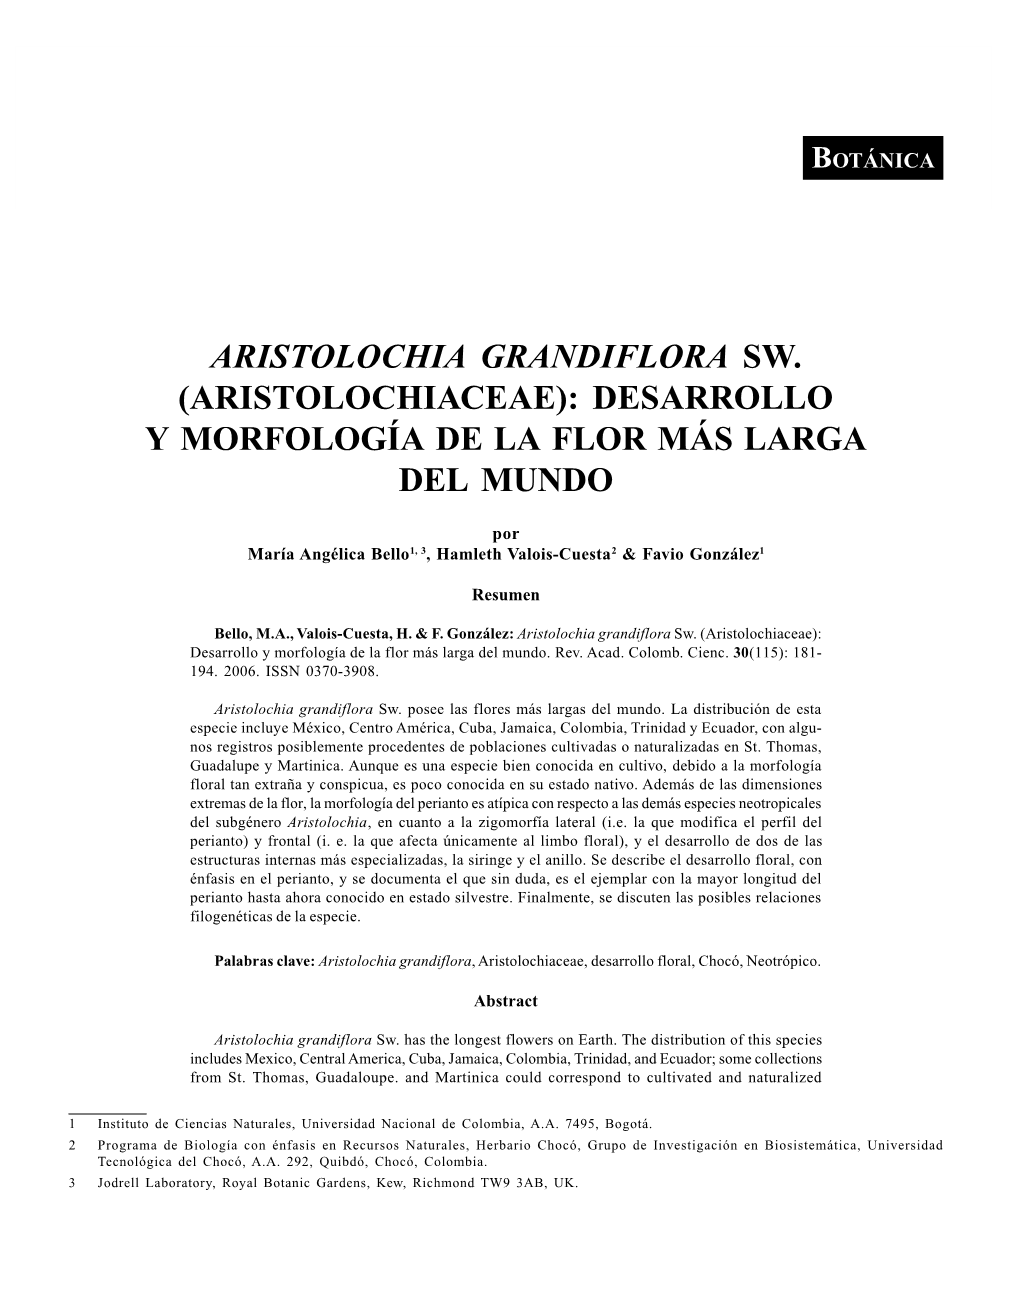 Aristolochia Grandiflora Sw